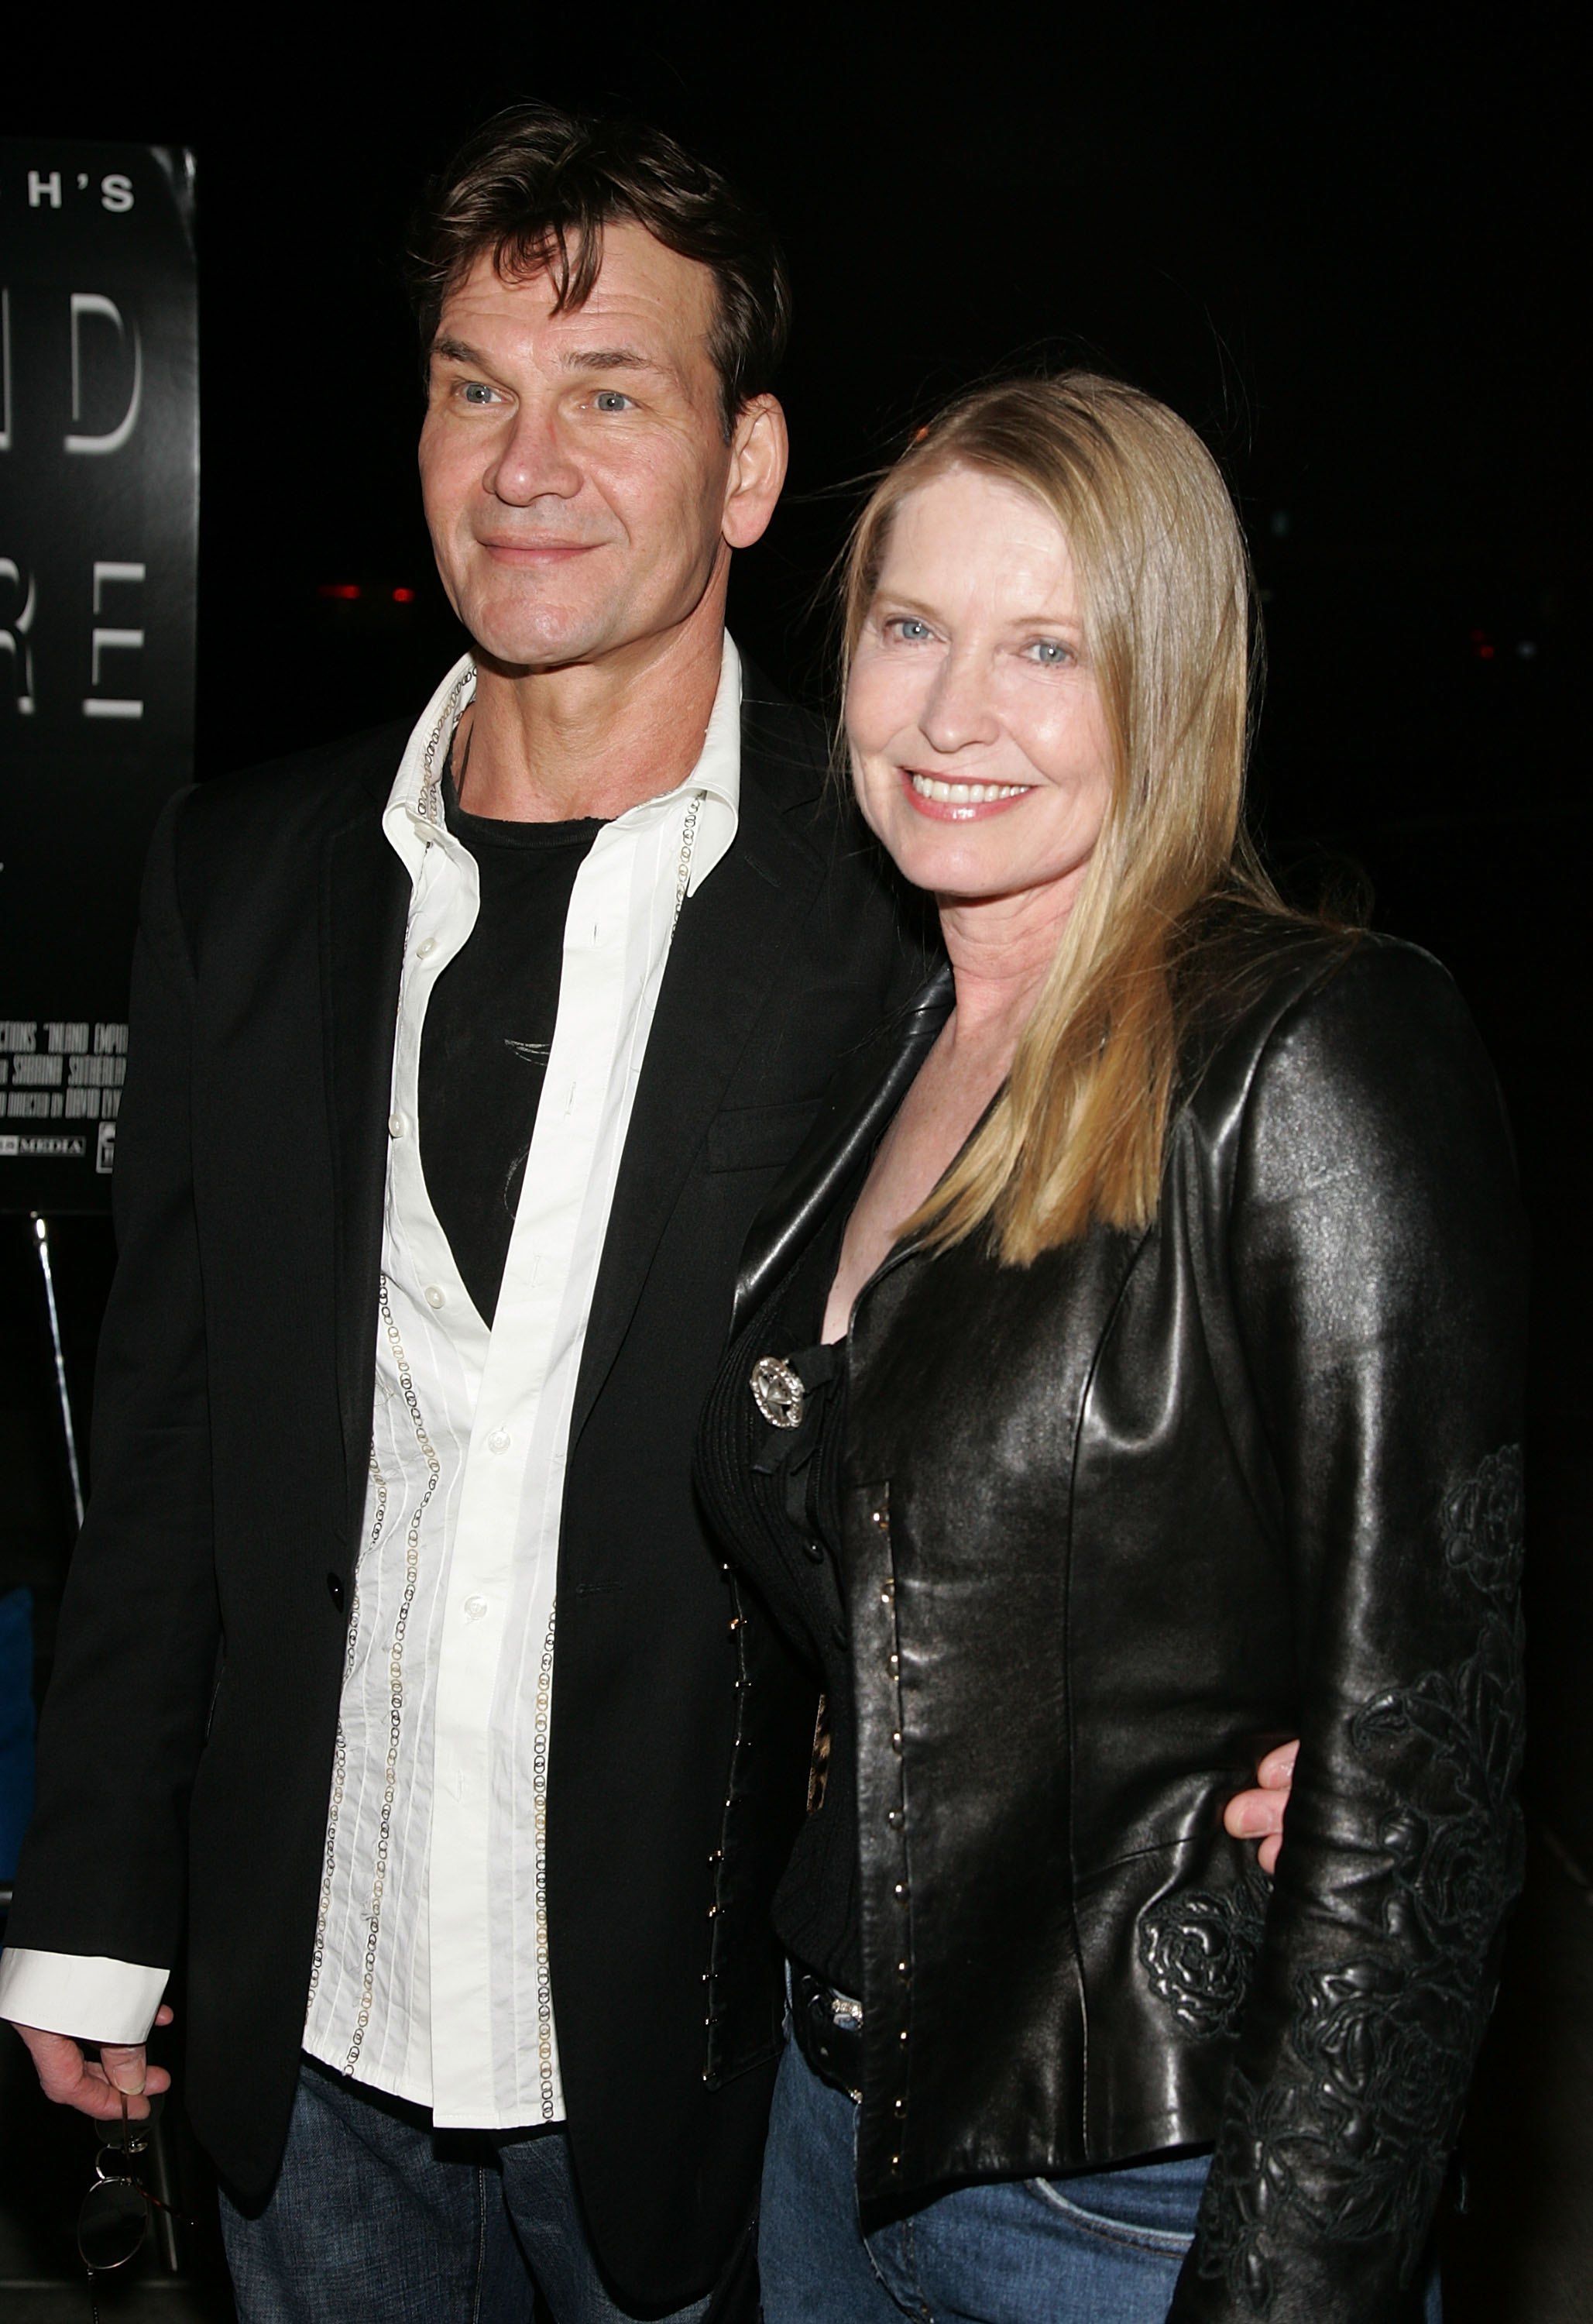 Patrick Swayze und seine Frau Lisa Niemi treffen bei der Premiere von "Inland Empire" in Los Angeles ein, die am 9. Dezember 2006 im LACMA Museum in Los Angeles, Kalifornien, stattfindet. (Foto von Frazer Harrison) I Quelle: Getty Images